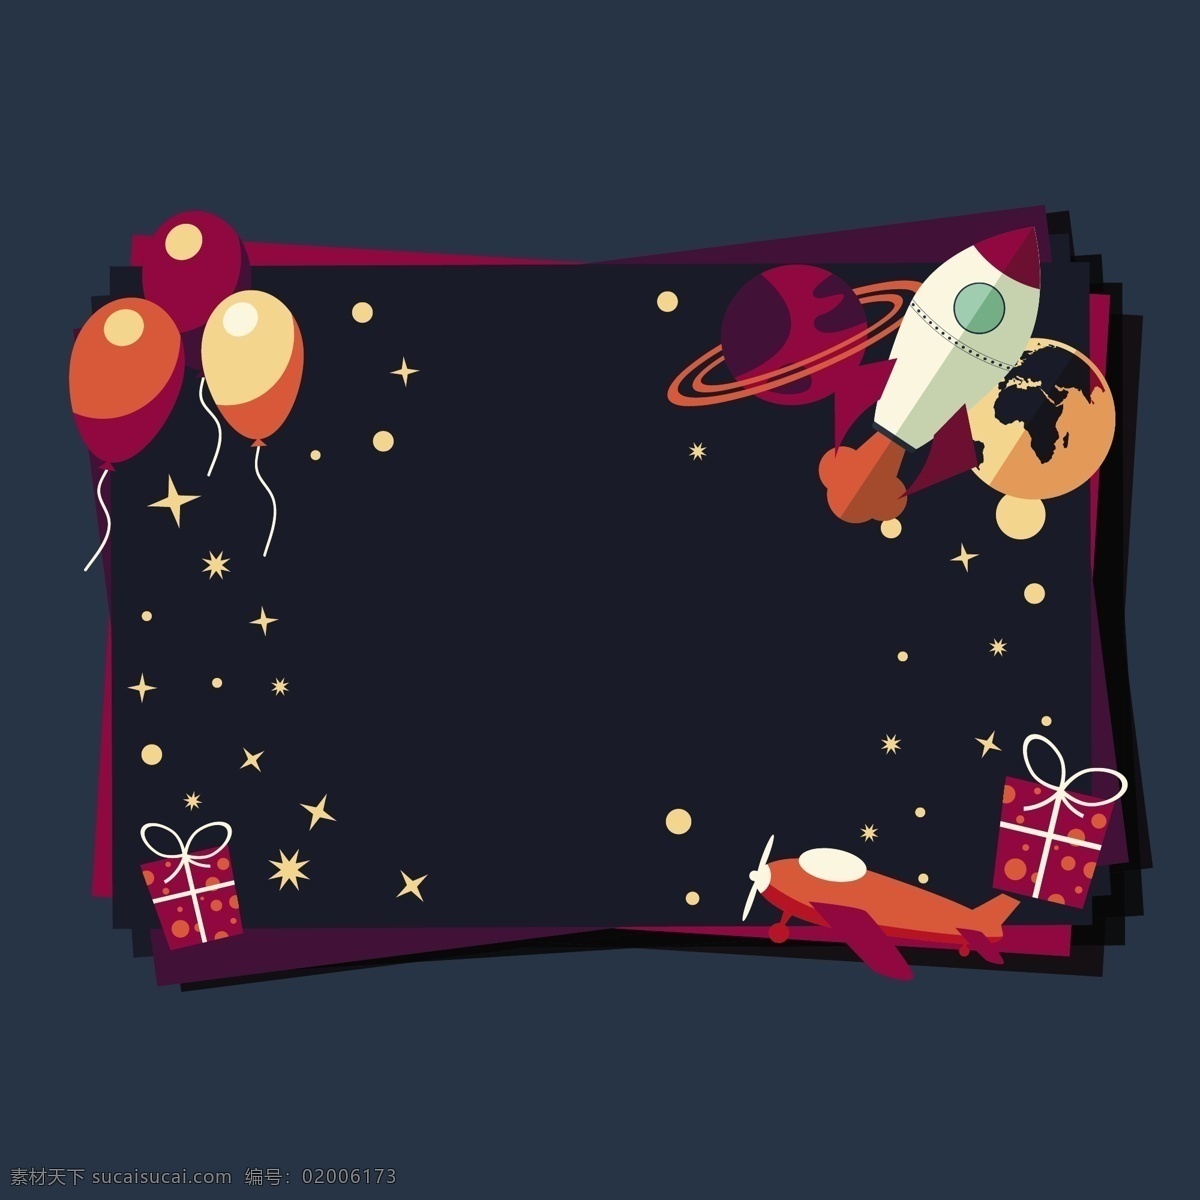 空间卡的设计 背景 明星 卡片 星星 壁纸 空间 火箭 礼品卡 气球 行星 礼物 星星背景